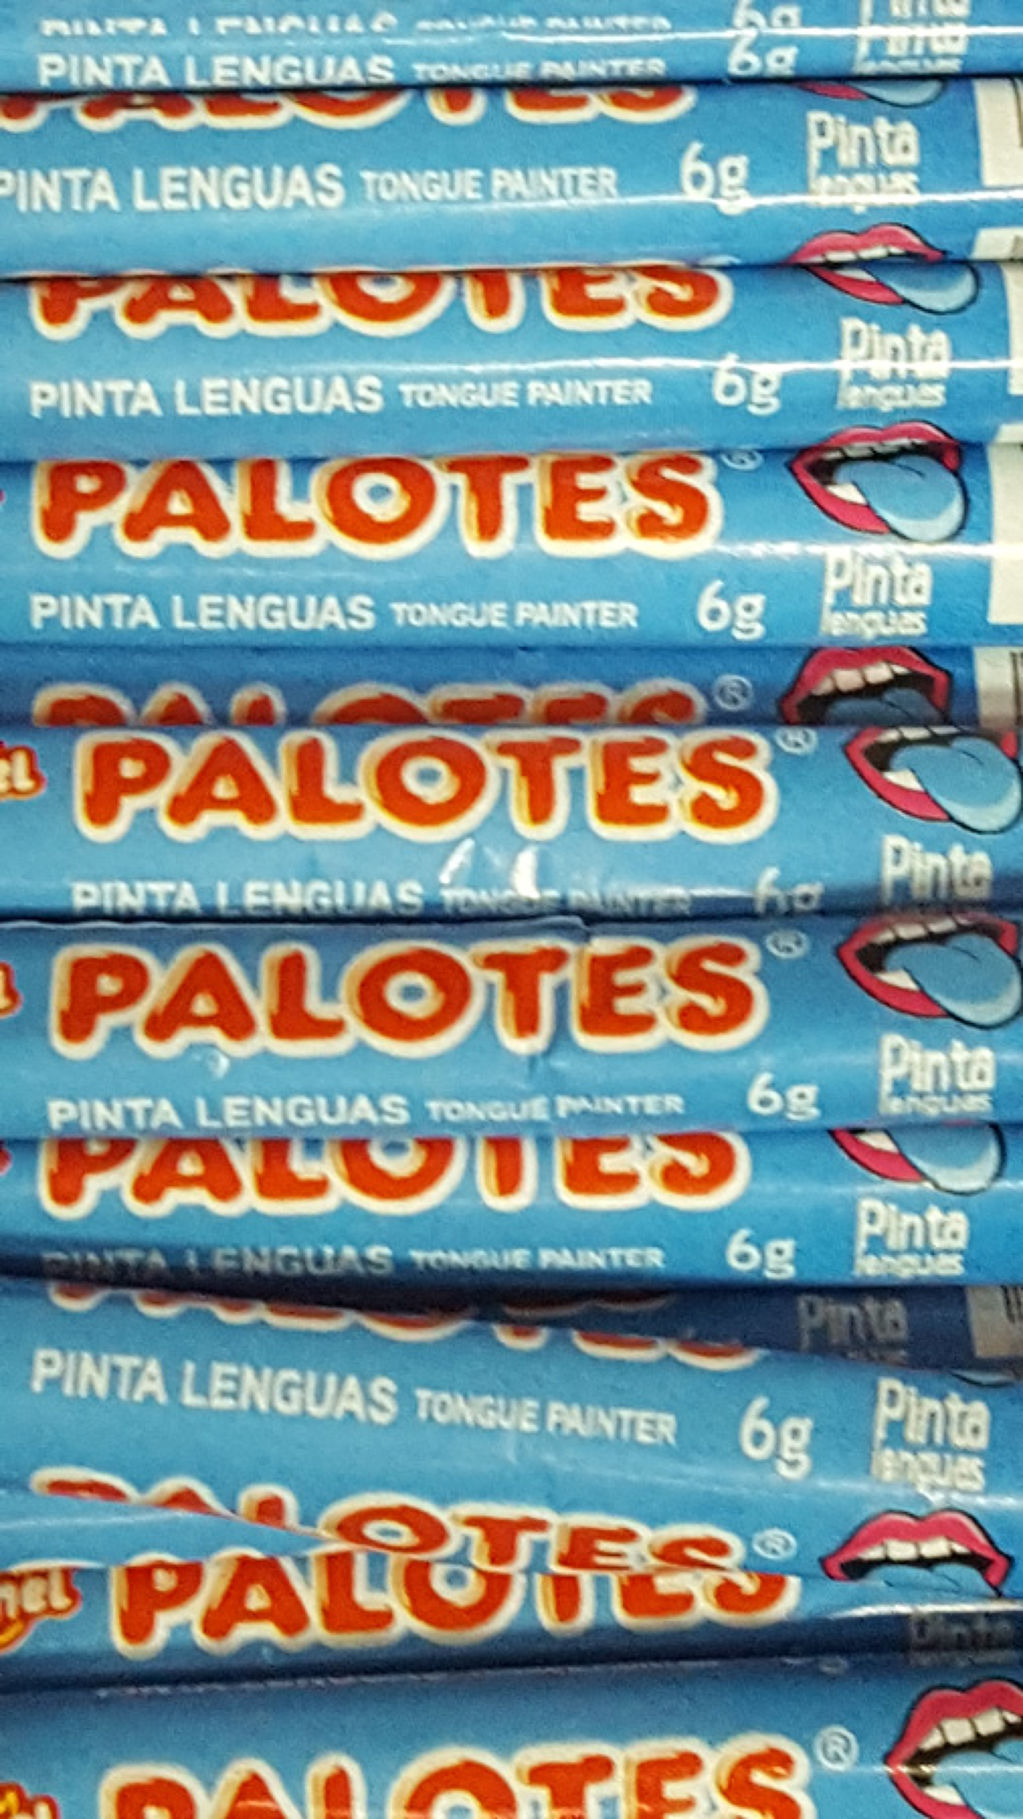 Palote Pinta lengua - 7fd19-20200509_082430.jpg